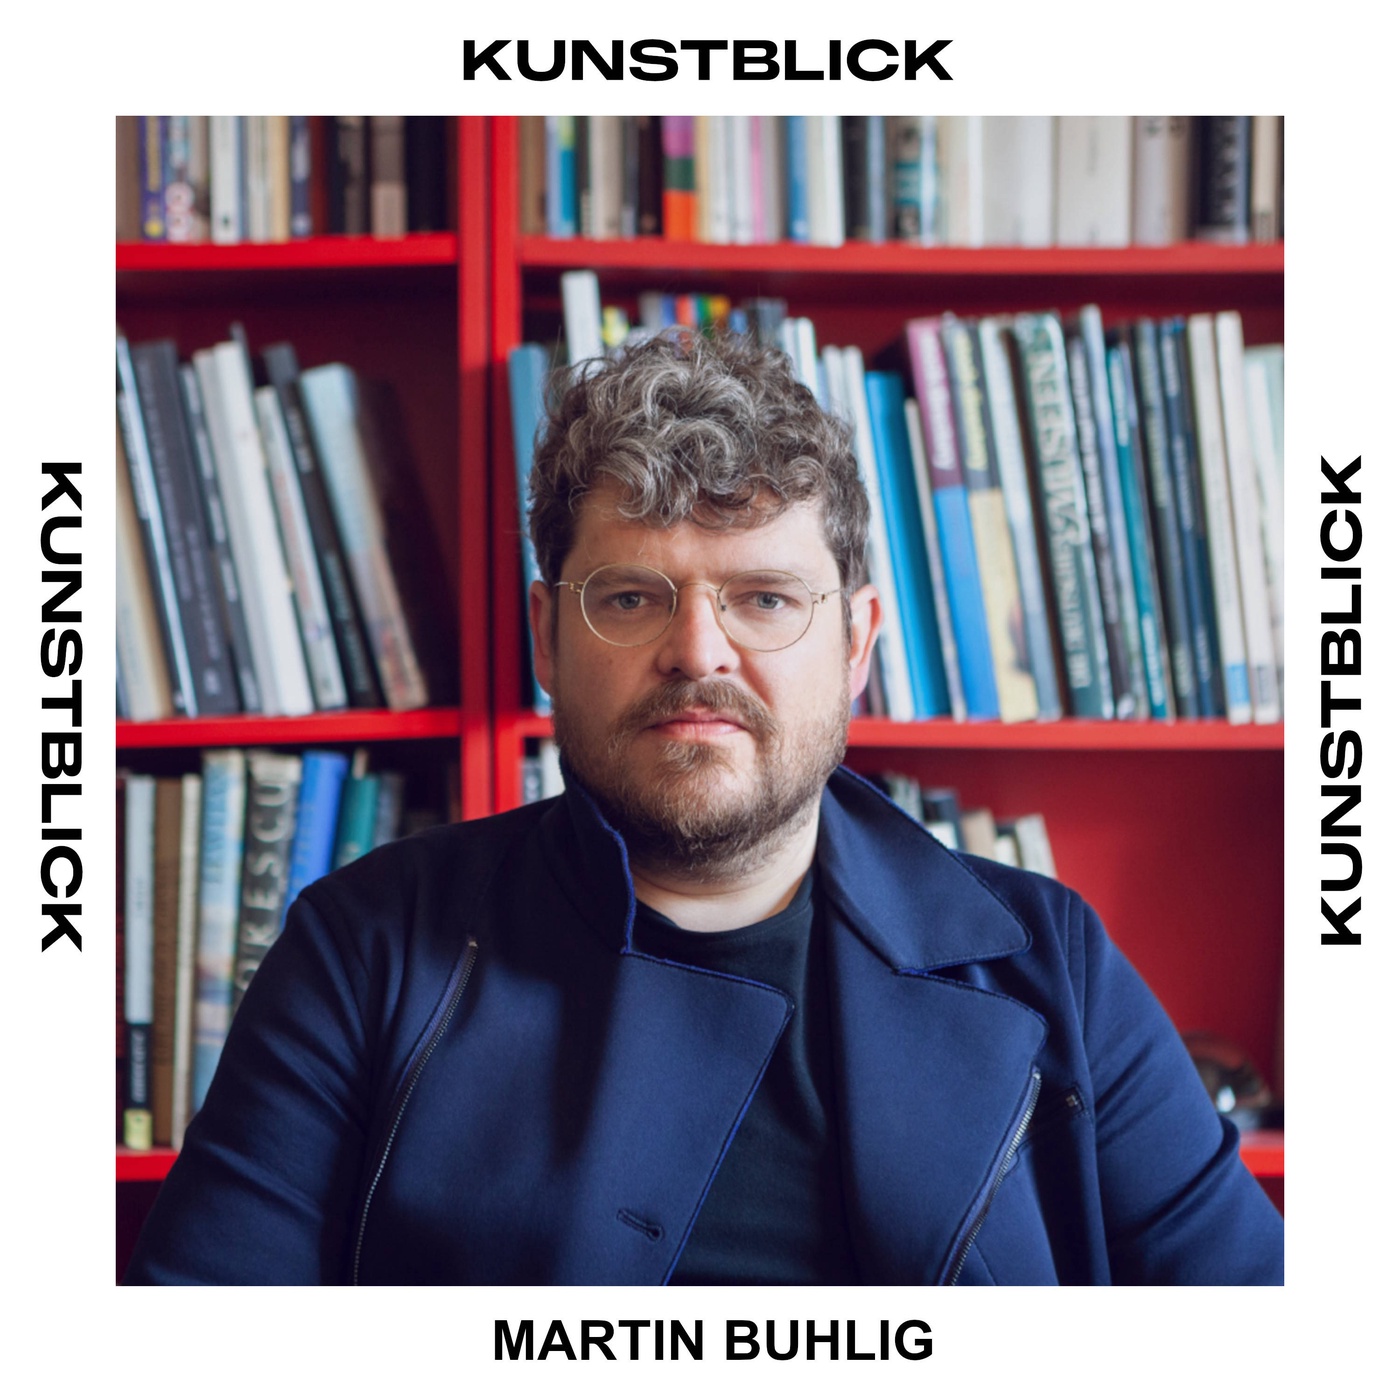 Martin Buhlig - Kurator und Gründer des Offspace Kaisitz